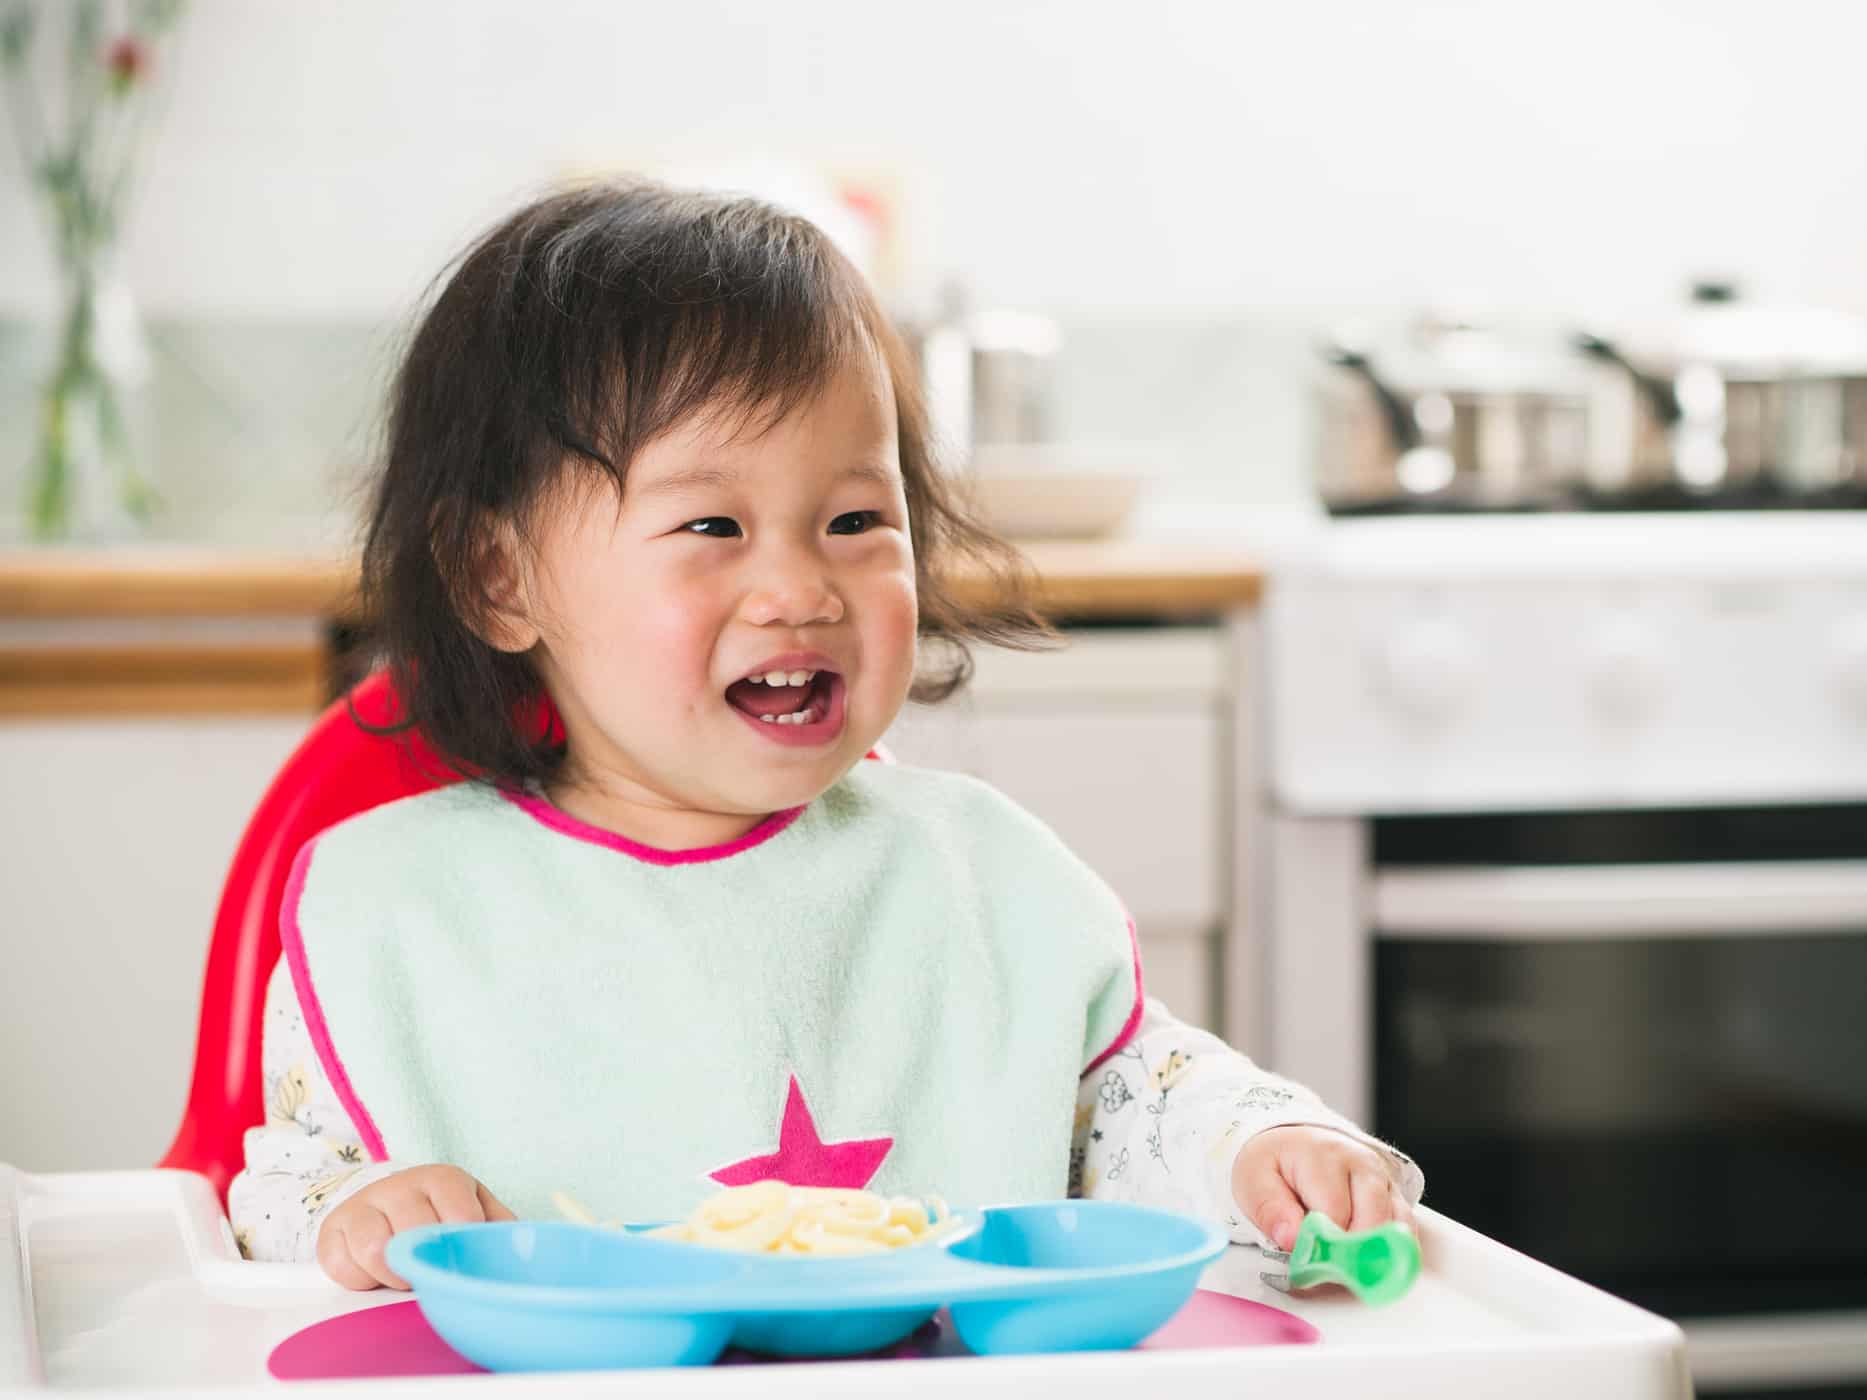 Jadual dan peraturan makan agar kanak-kanak yang berumur 1-5 tahun menjadi lebih teratur